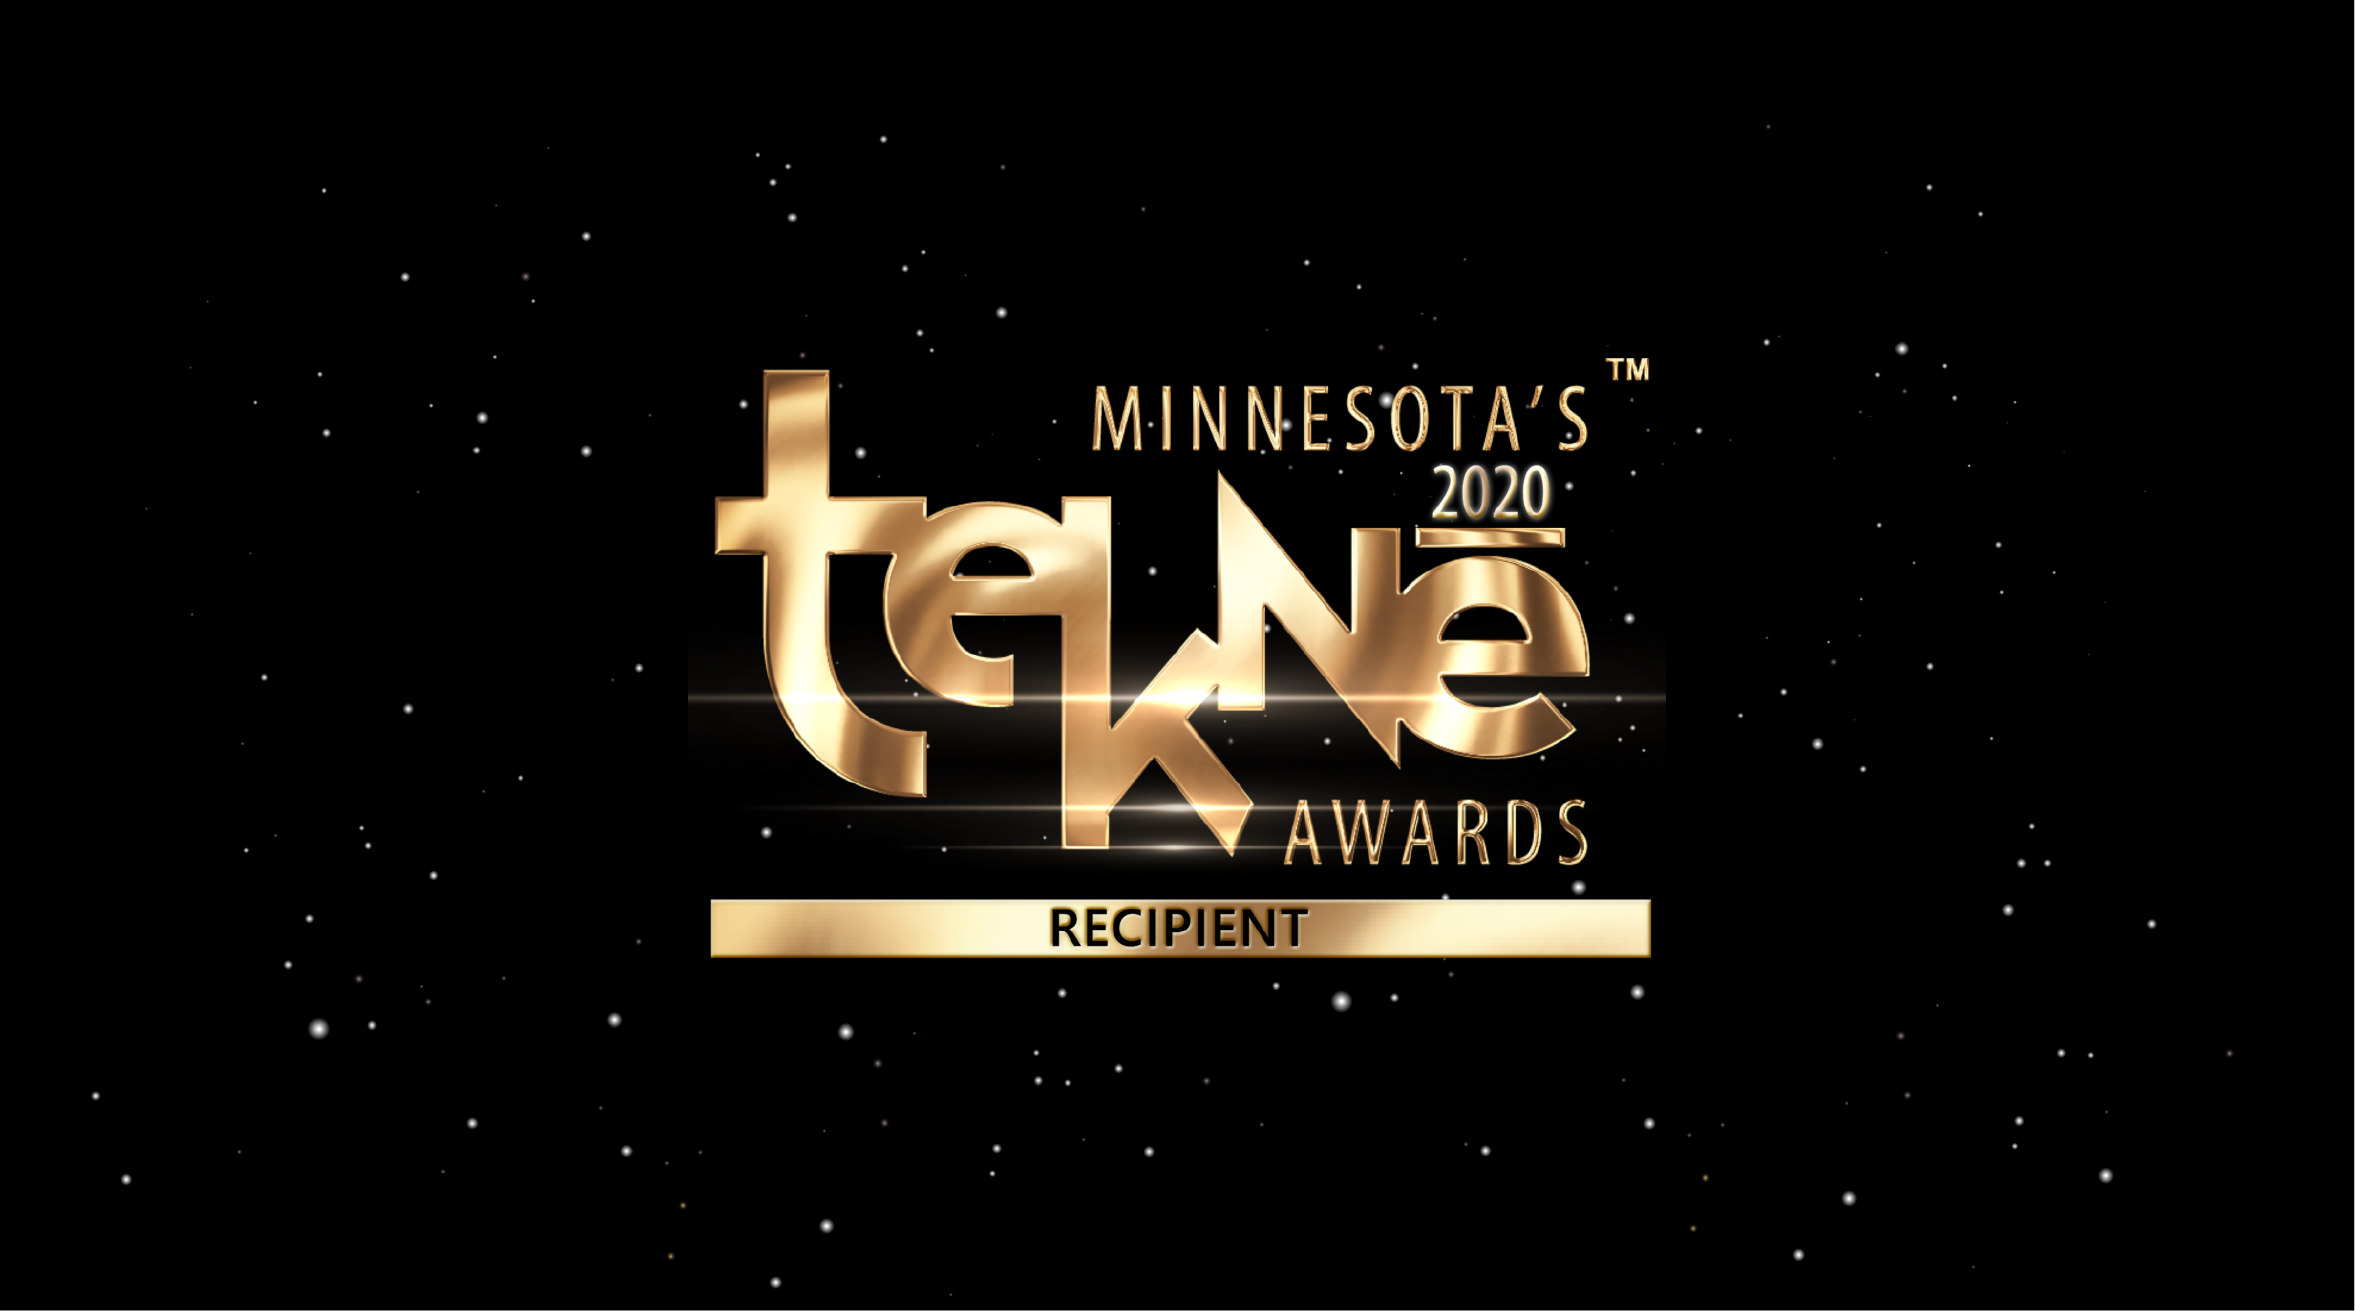 MN TEKNE Award logo